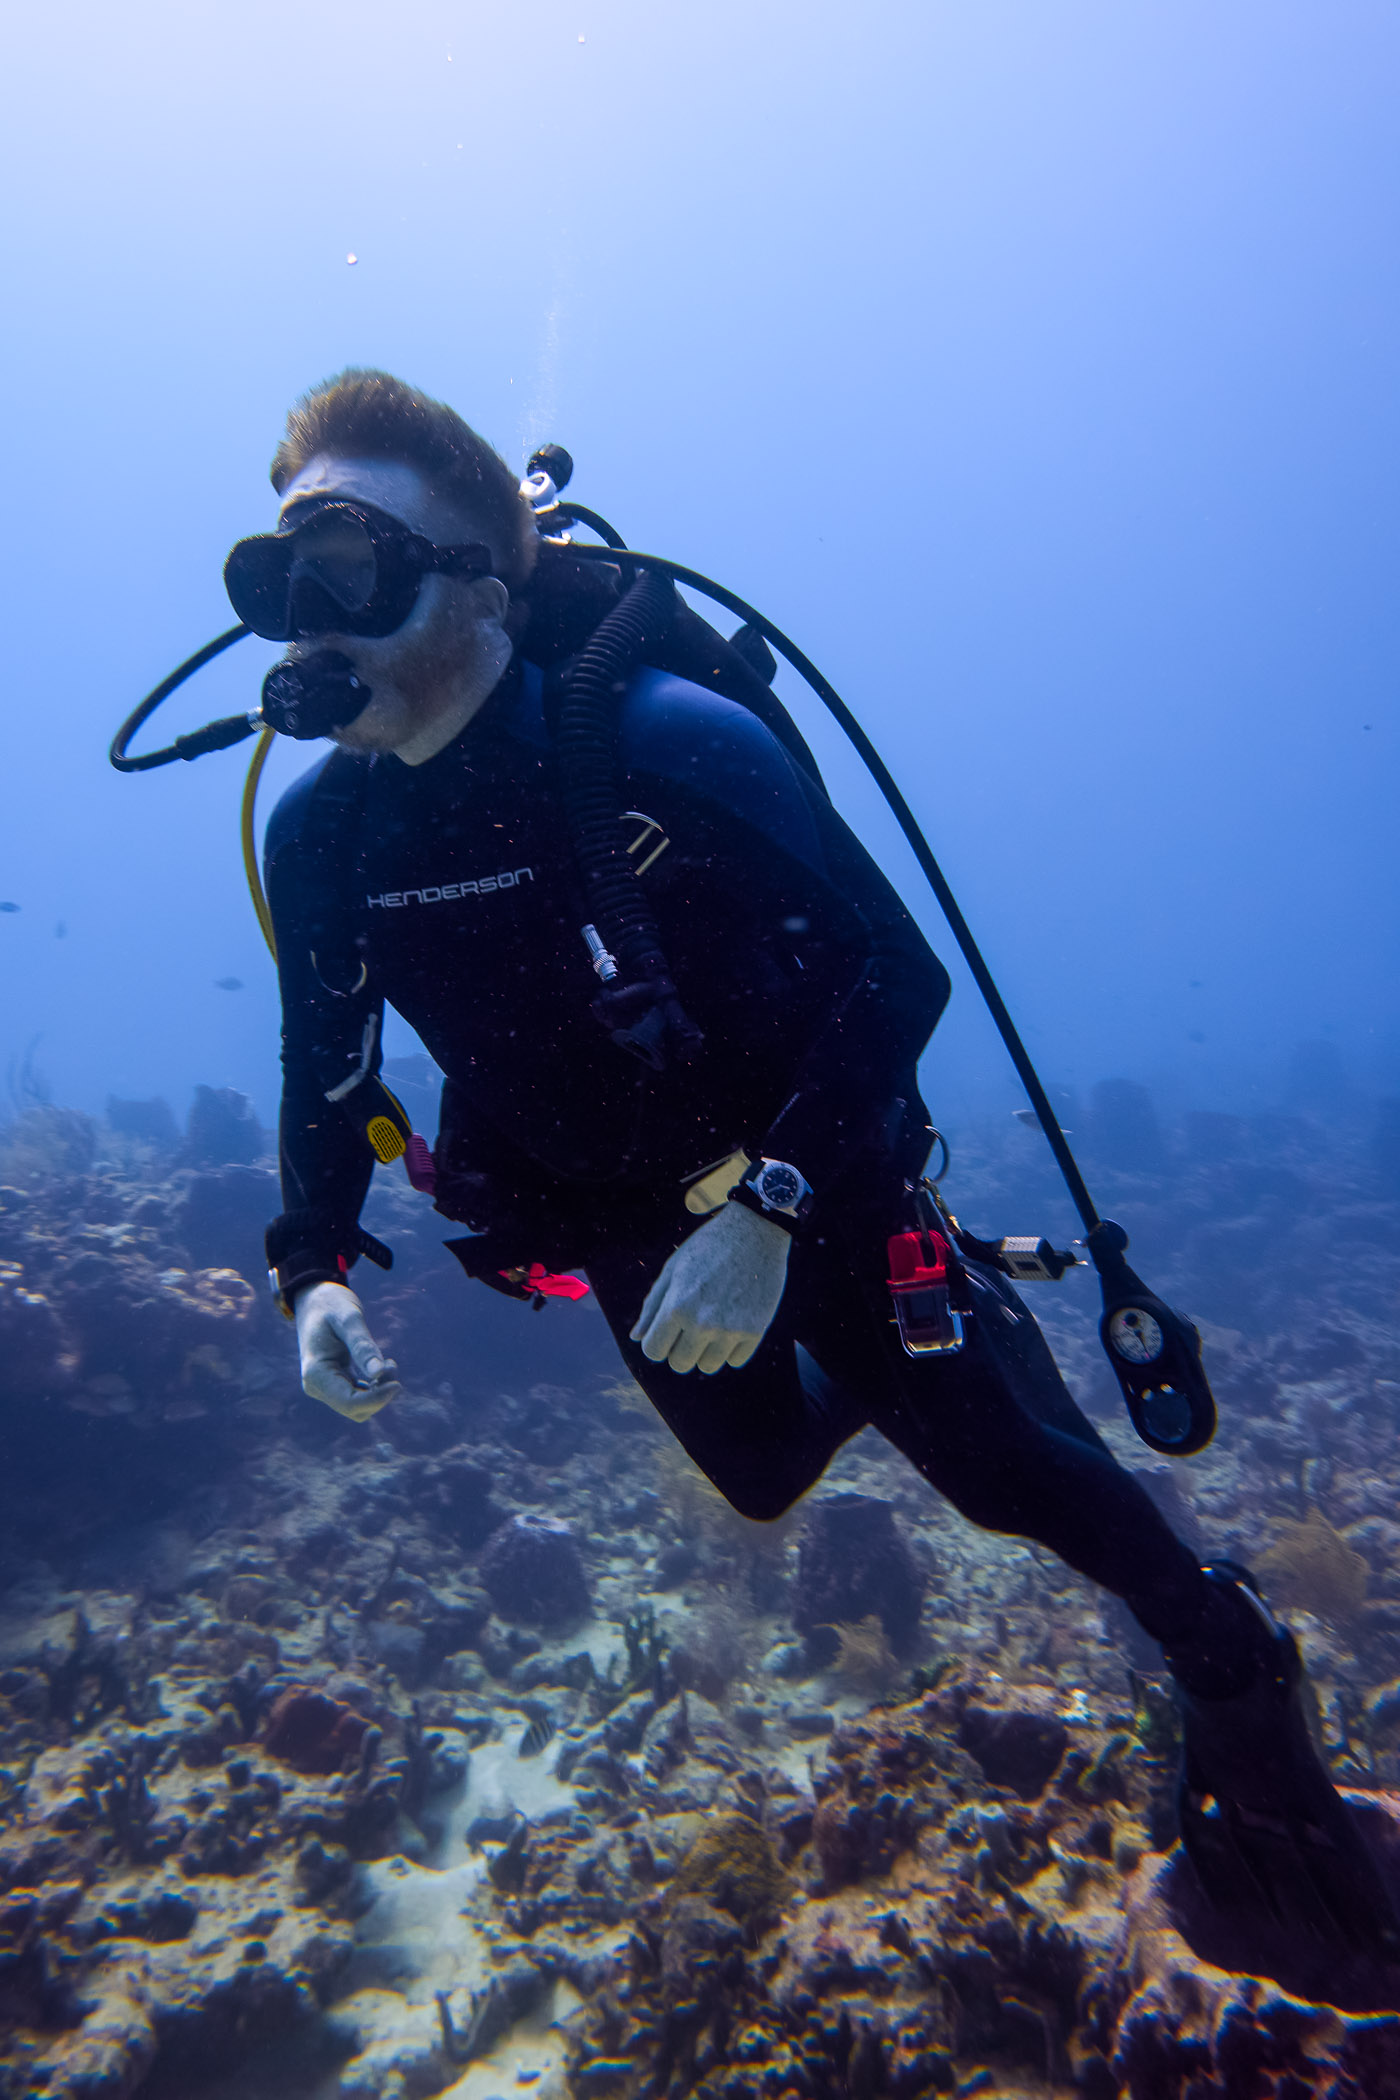 Aquastar Model 60 dive watch - underwater diving review